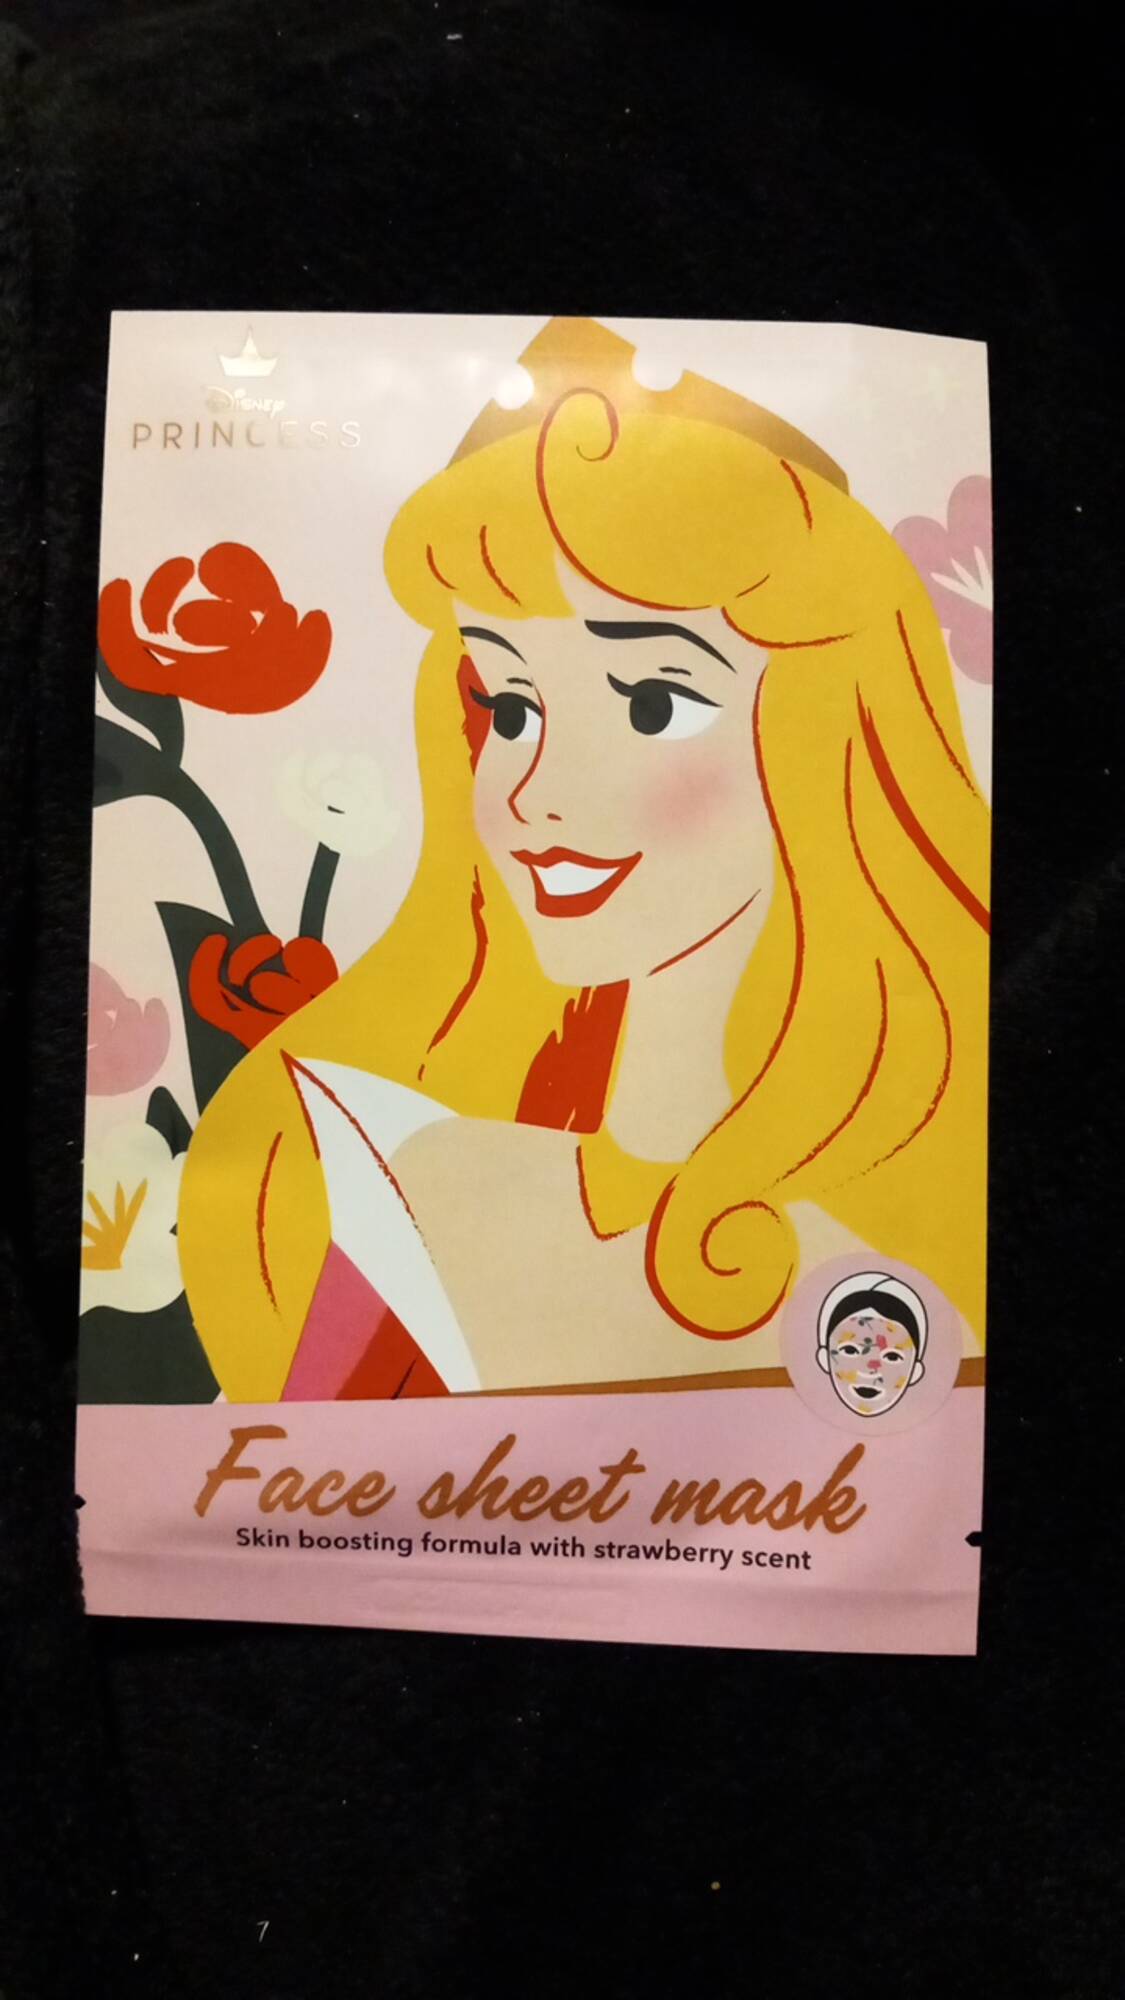 DISNEY PRINCESS - Face sheet mask